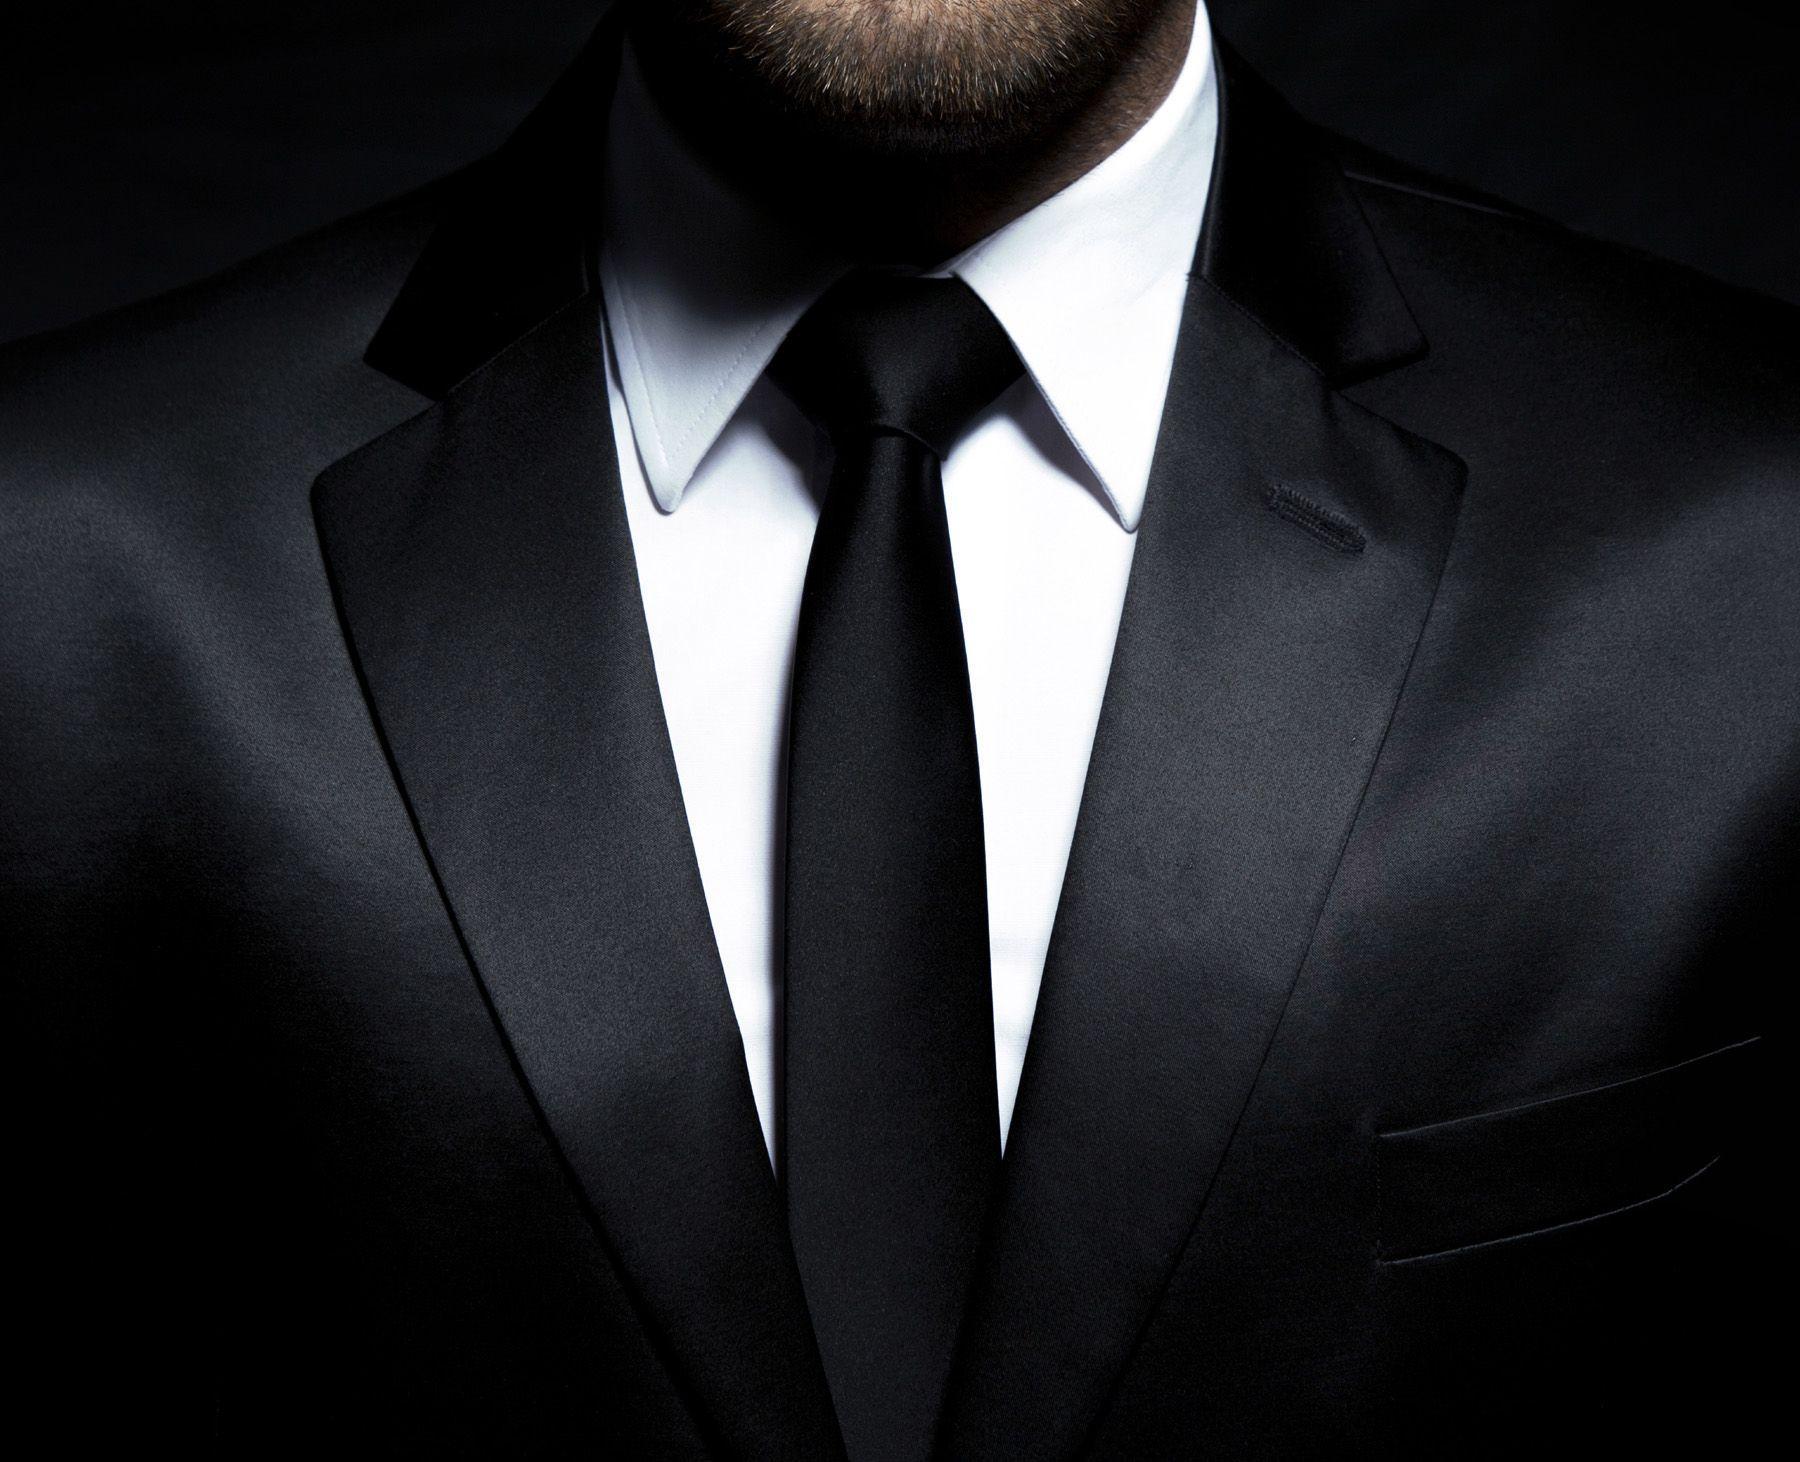 Suit And Tie, Black Suit HD wallpaper | Pxfuel